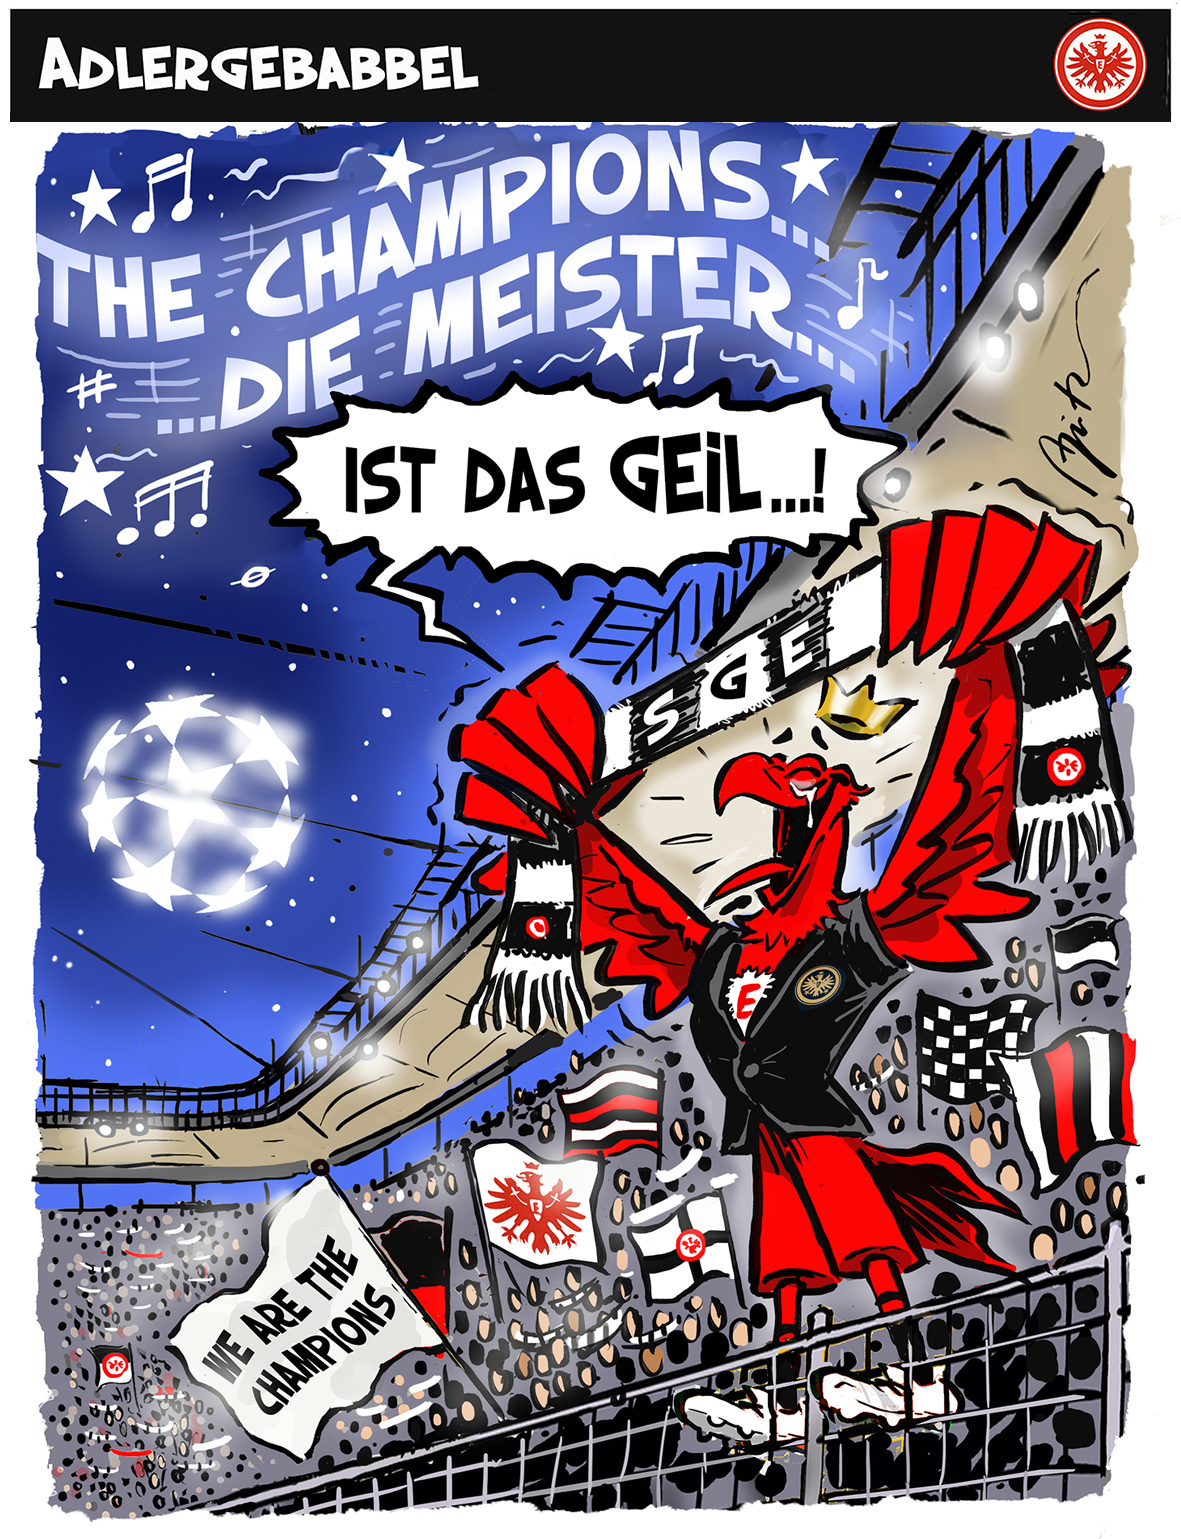 CL-Premieren-STT Eintracht Frankfurt gegen Sporting Lissabon, 1